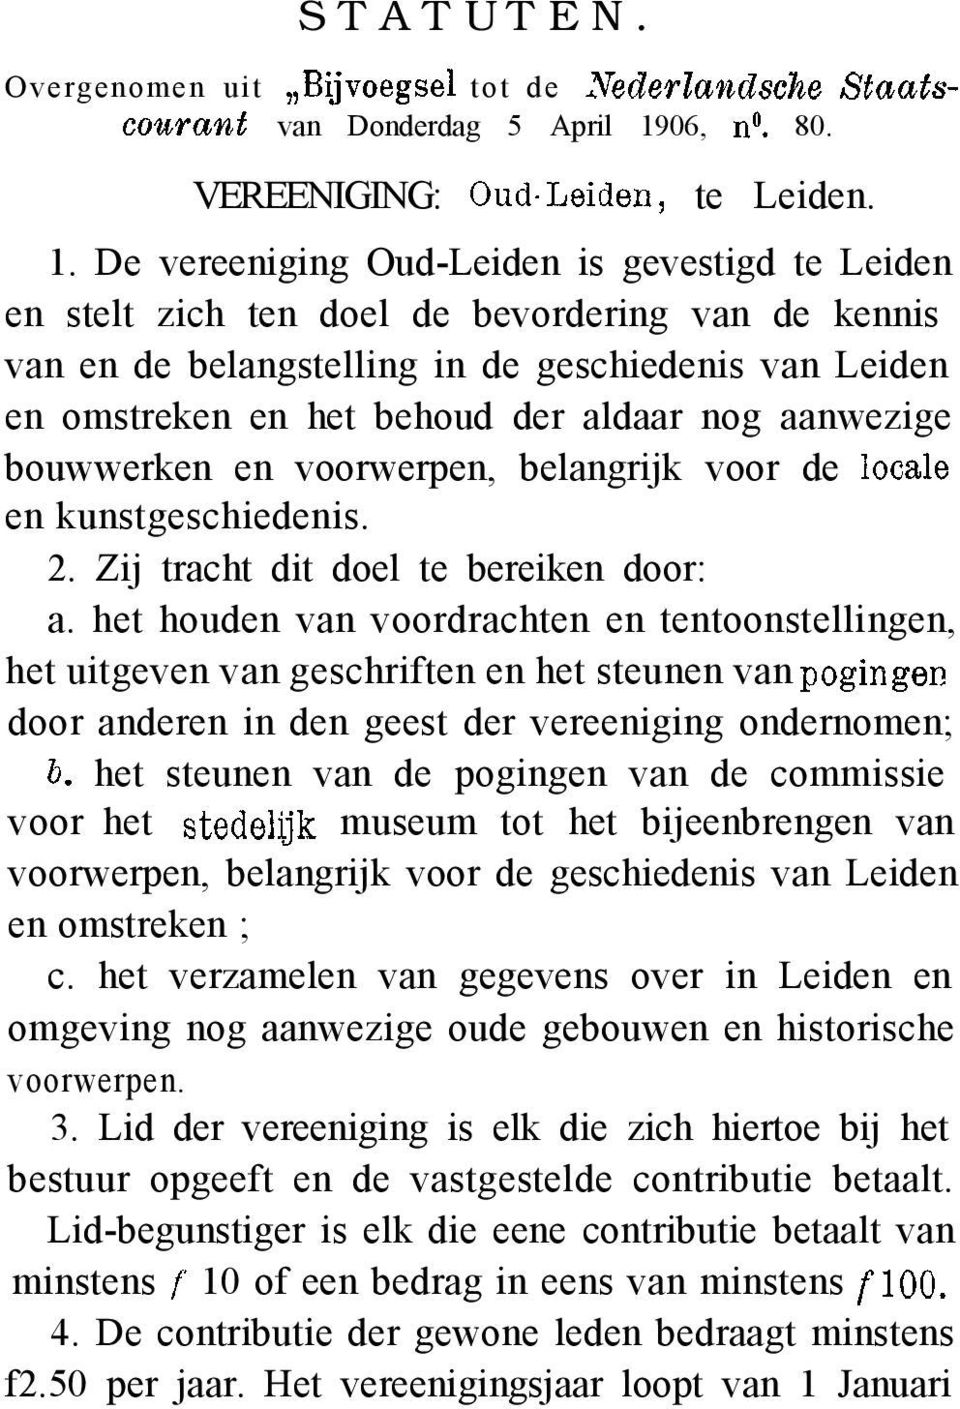 De vereeniging Oud-Leiden is gevestigd te Leiden en stelt zich ten doel de bevordering van de kennis van en de belangstelling in de geschiedenis van Leiden en omstreken en het behoud der aldaar nog